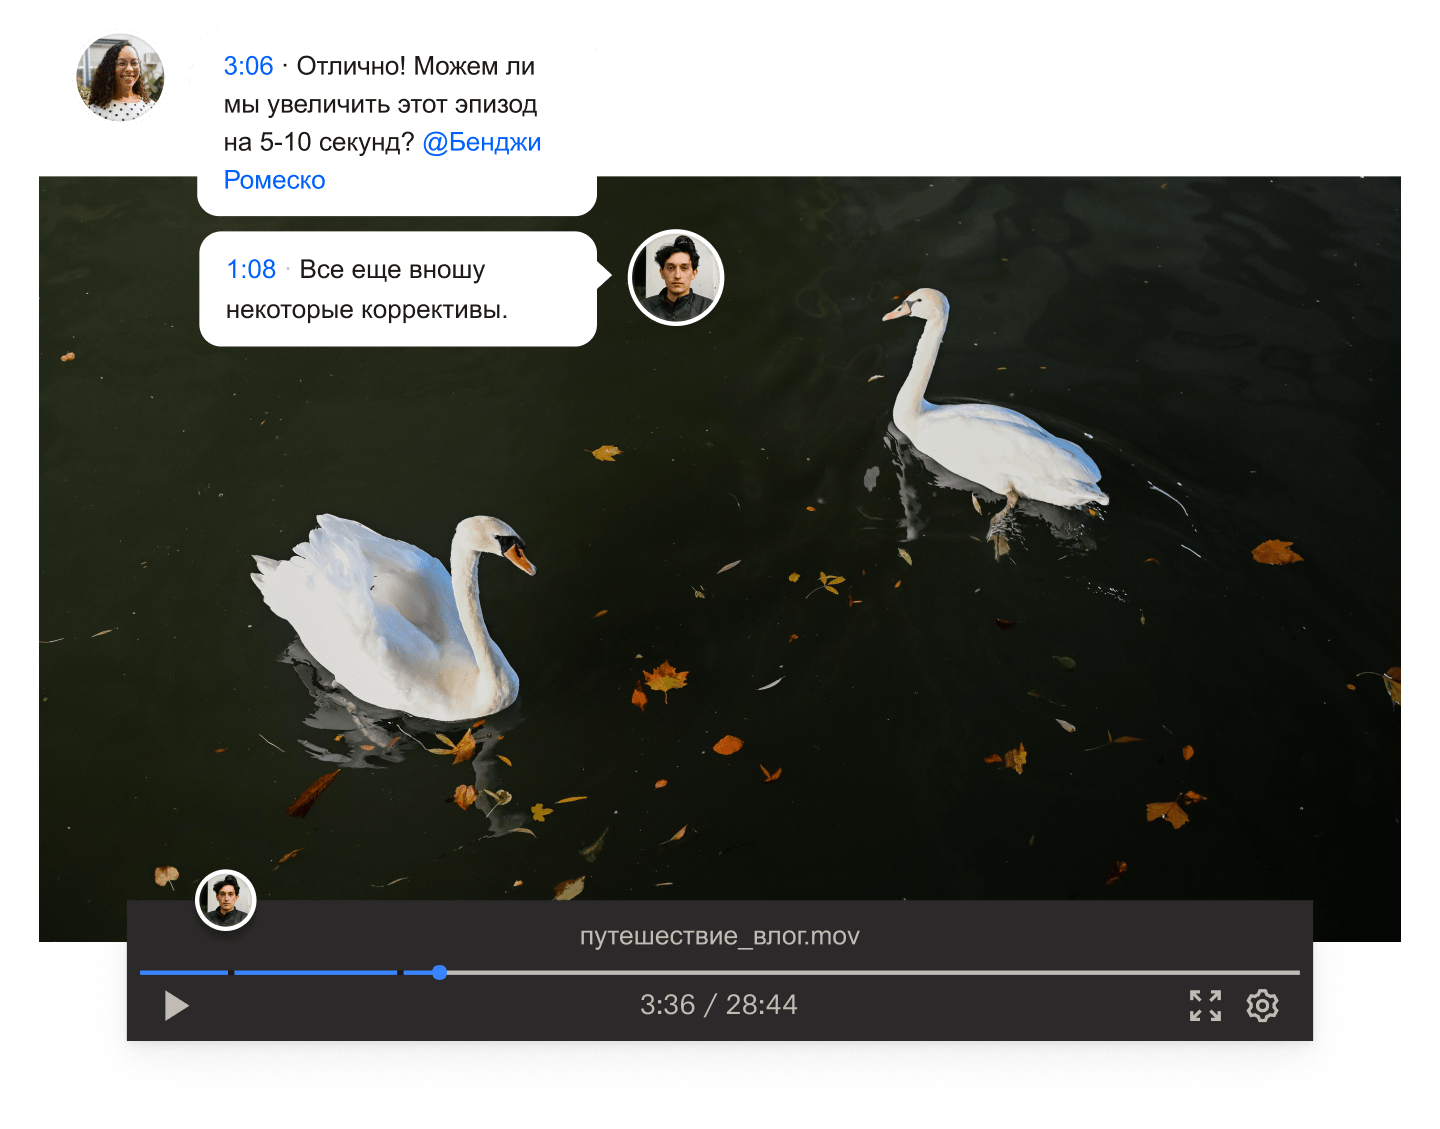 Кадр из видео с двумя лебедями, плывущими по воде, с наложенными комментариями и отметками времени